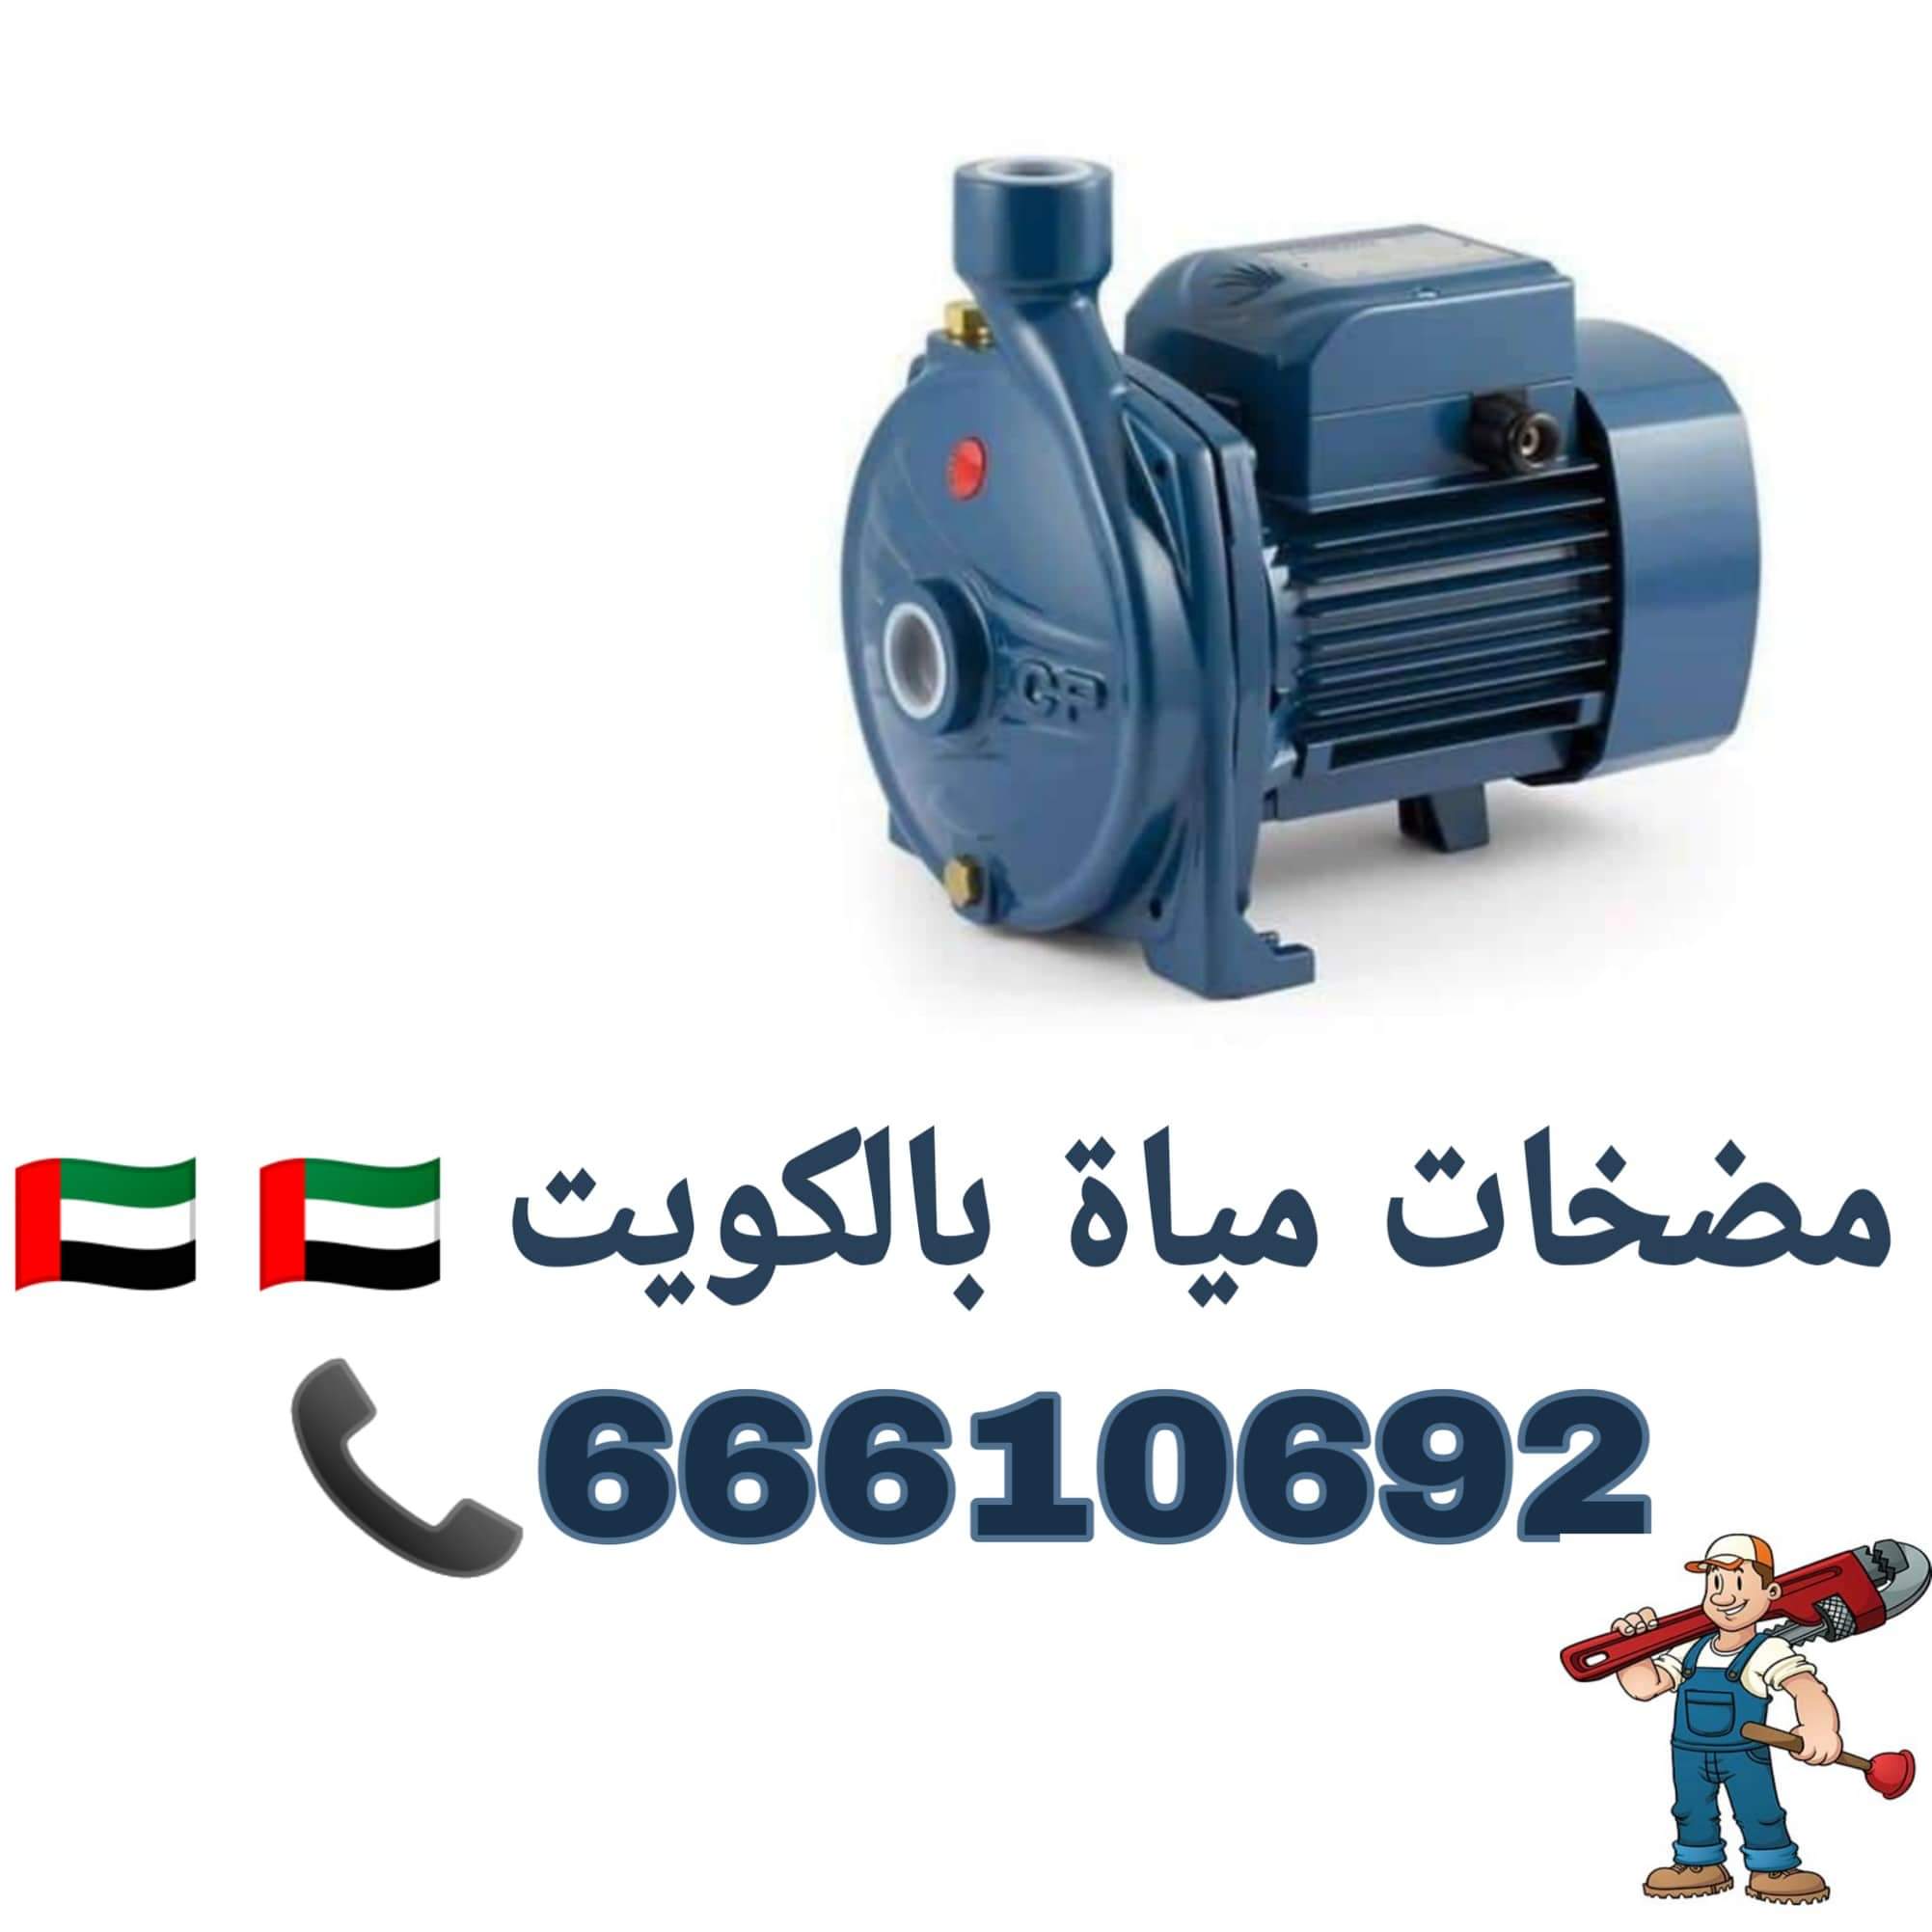 ادوات صحية القرين / 66610692 / صيانة وتركيب فني صحي داخل الكويت